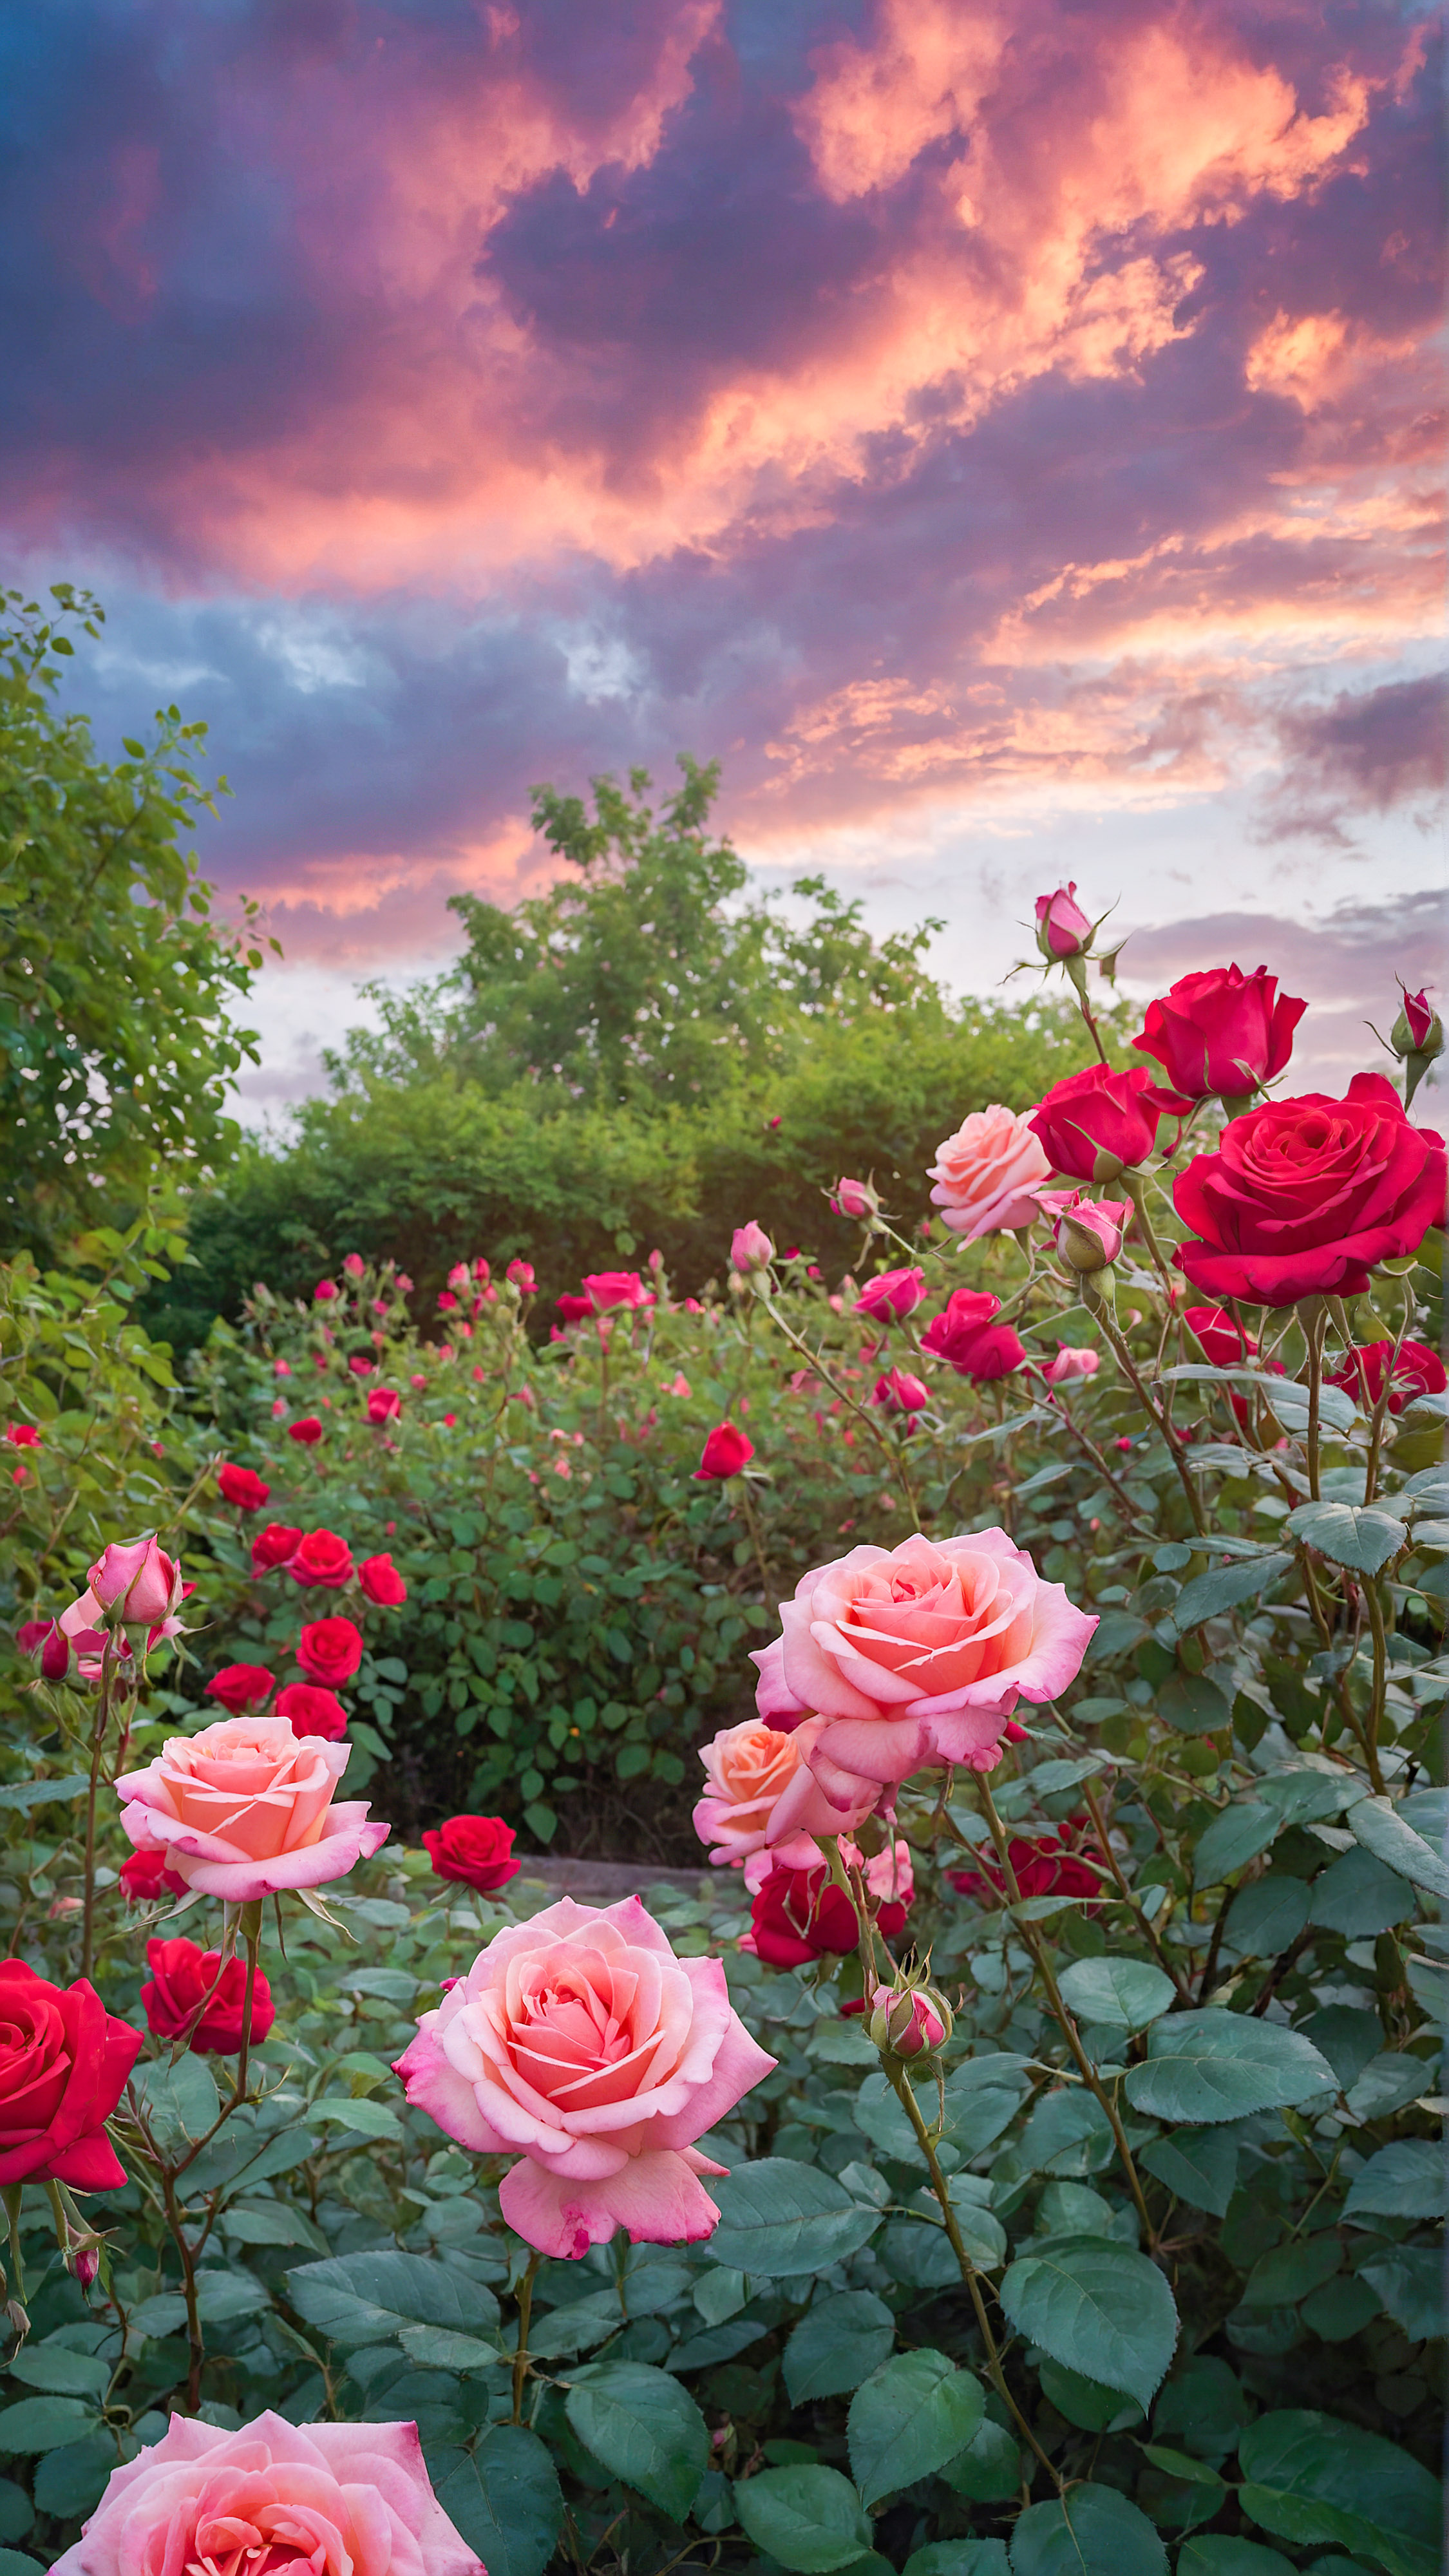 Transformez l'apparence de votre appareil avec un mignon fond d'écran HD pour iPhone, présentant un jardin vibrant rempli de roses roses et rouges en fleurs sous un ciel lumineux et nuageux.